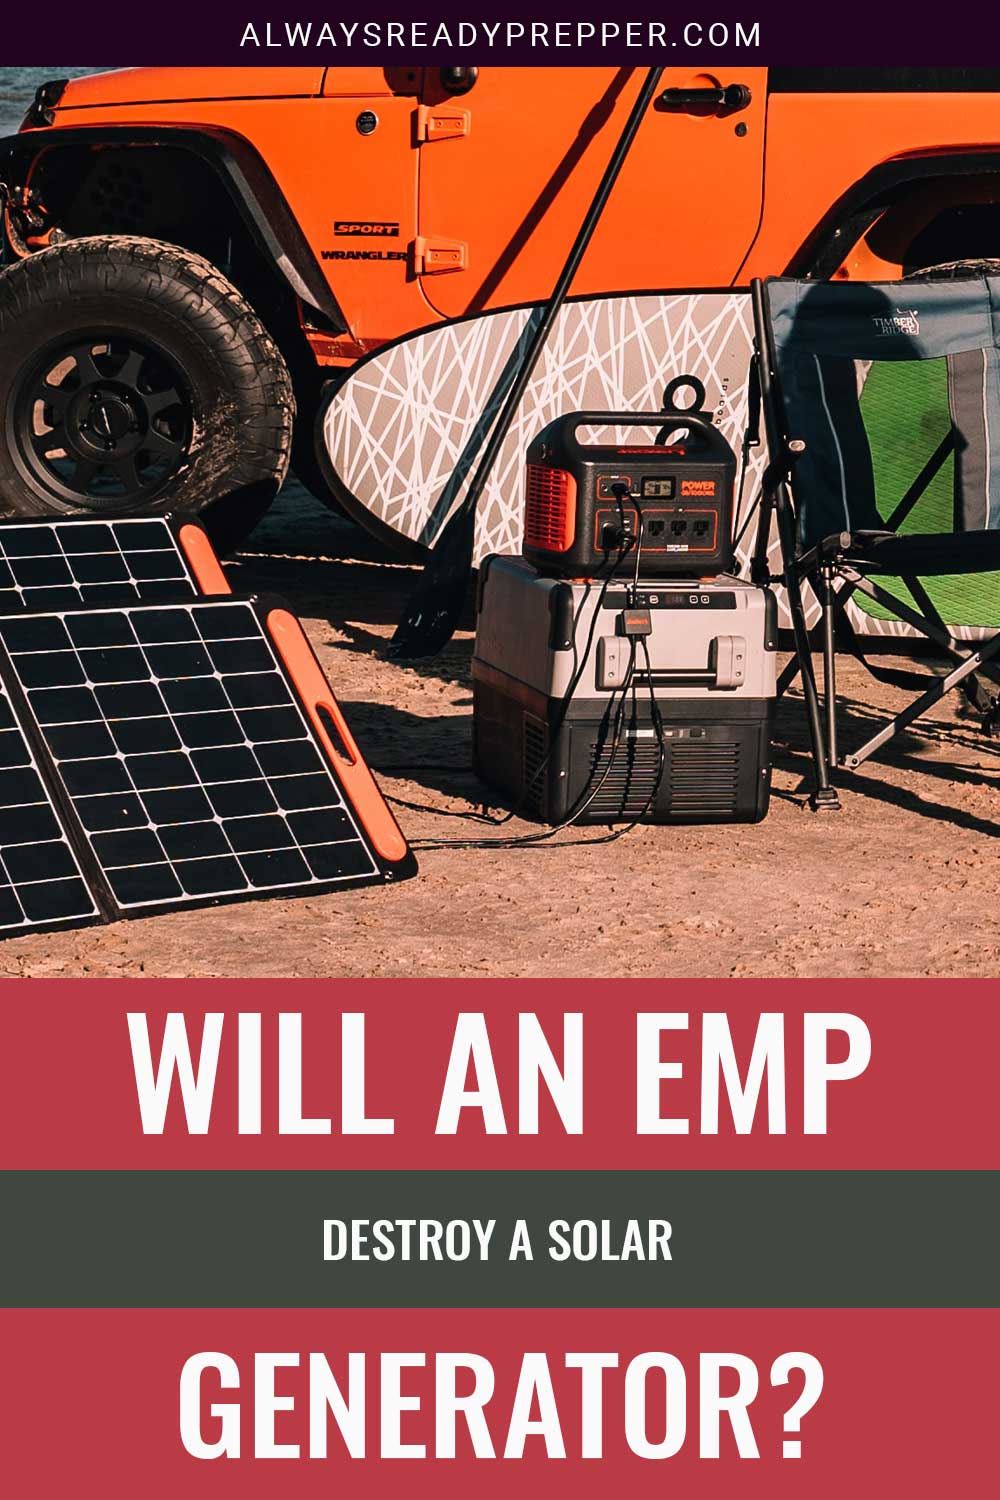 A solar power generator near an SUV - Will an EMP Destroy a Solar Generator?